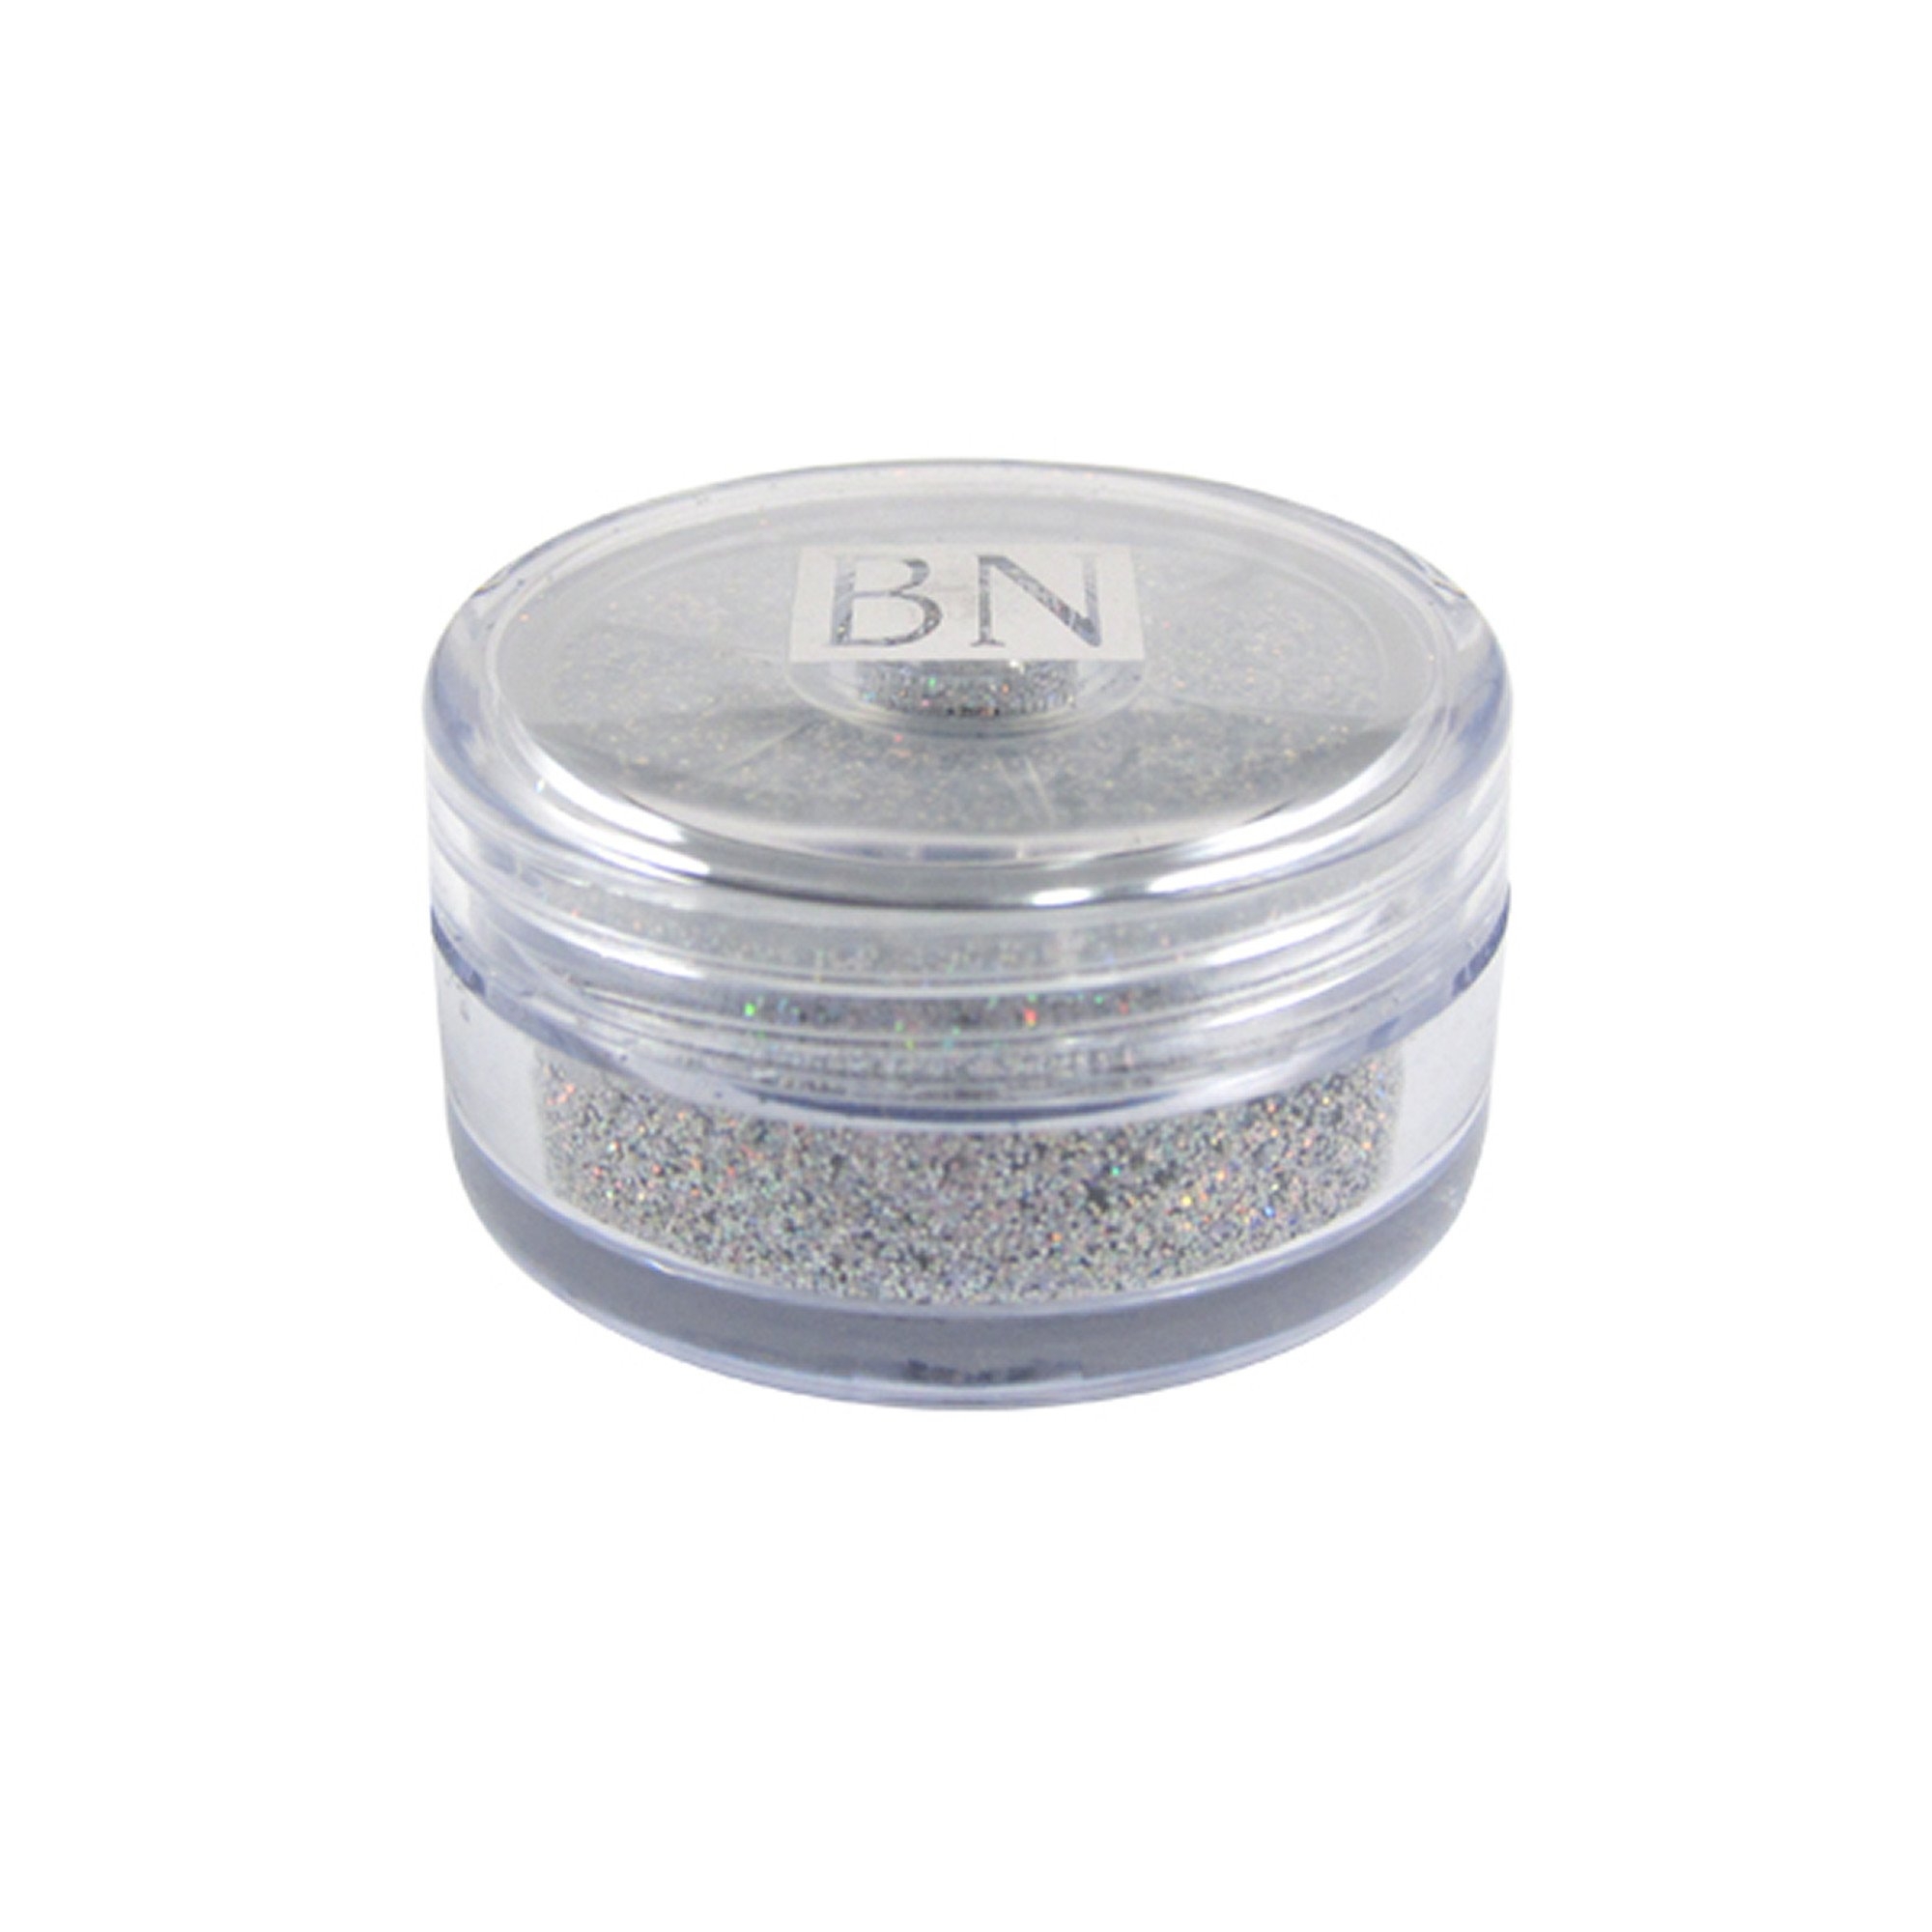 Ben Nye Sparklers Loose Glitter Silver Prism, 4gr